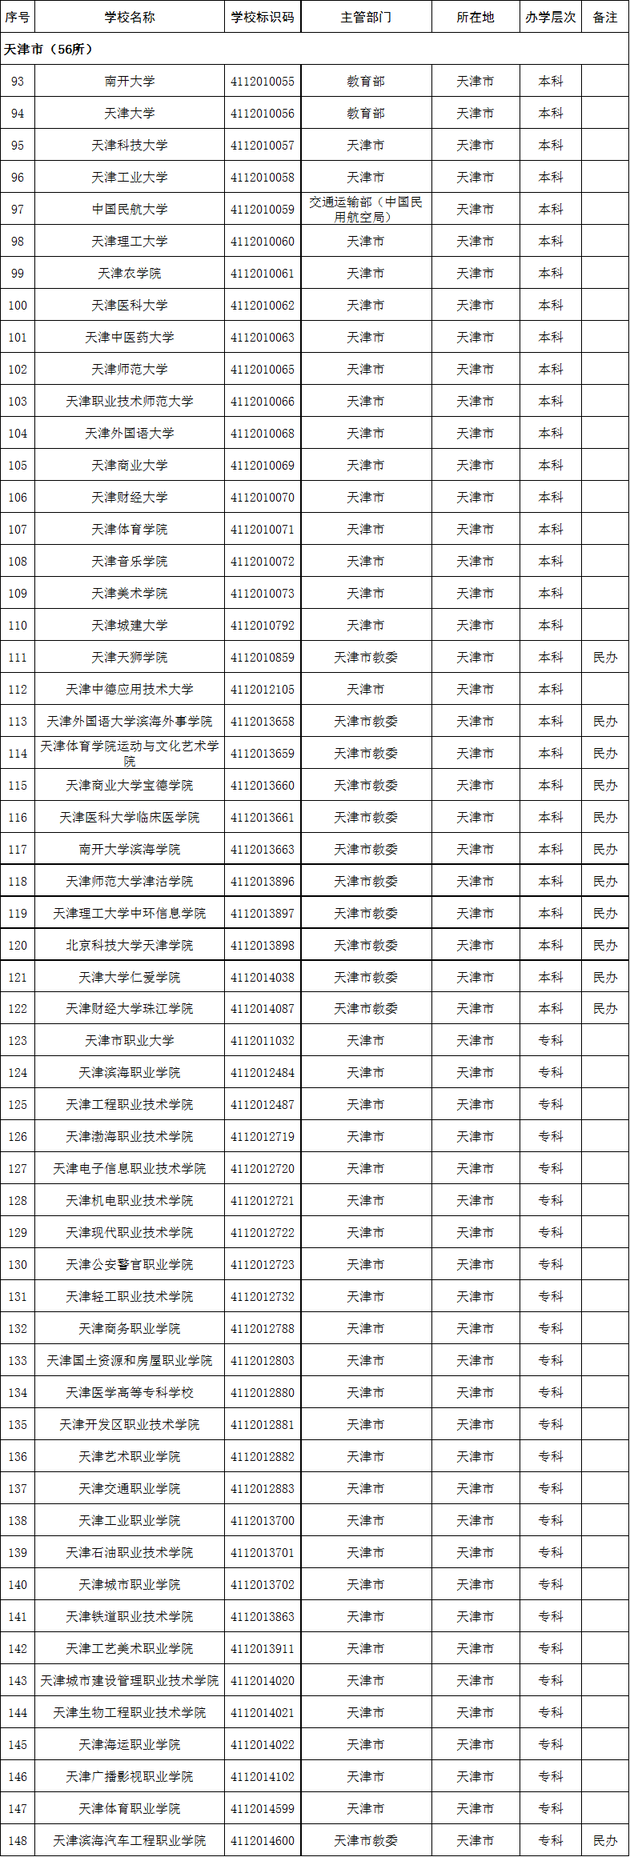 2020年天津市高校名单(56所)